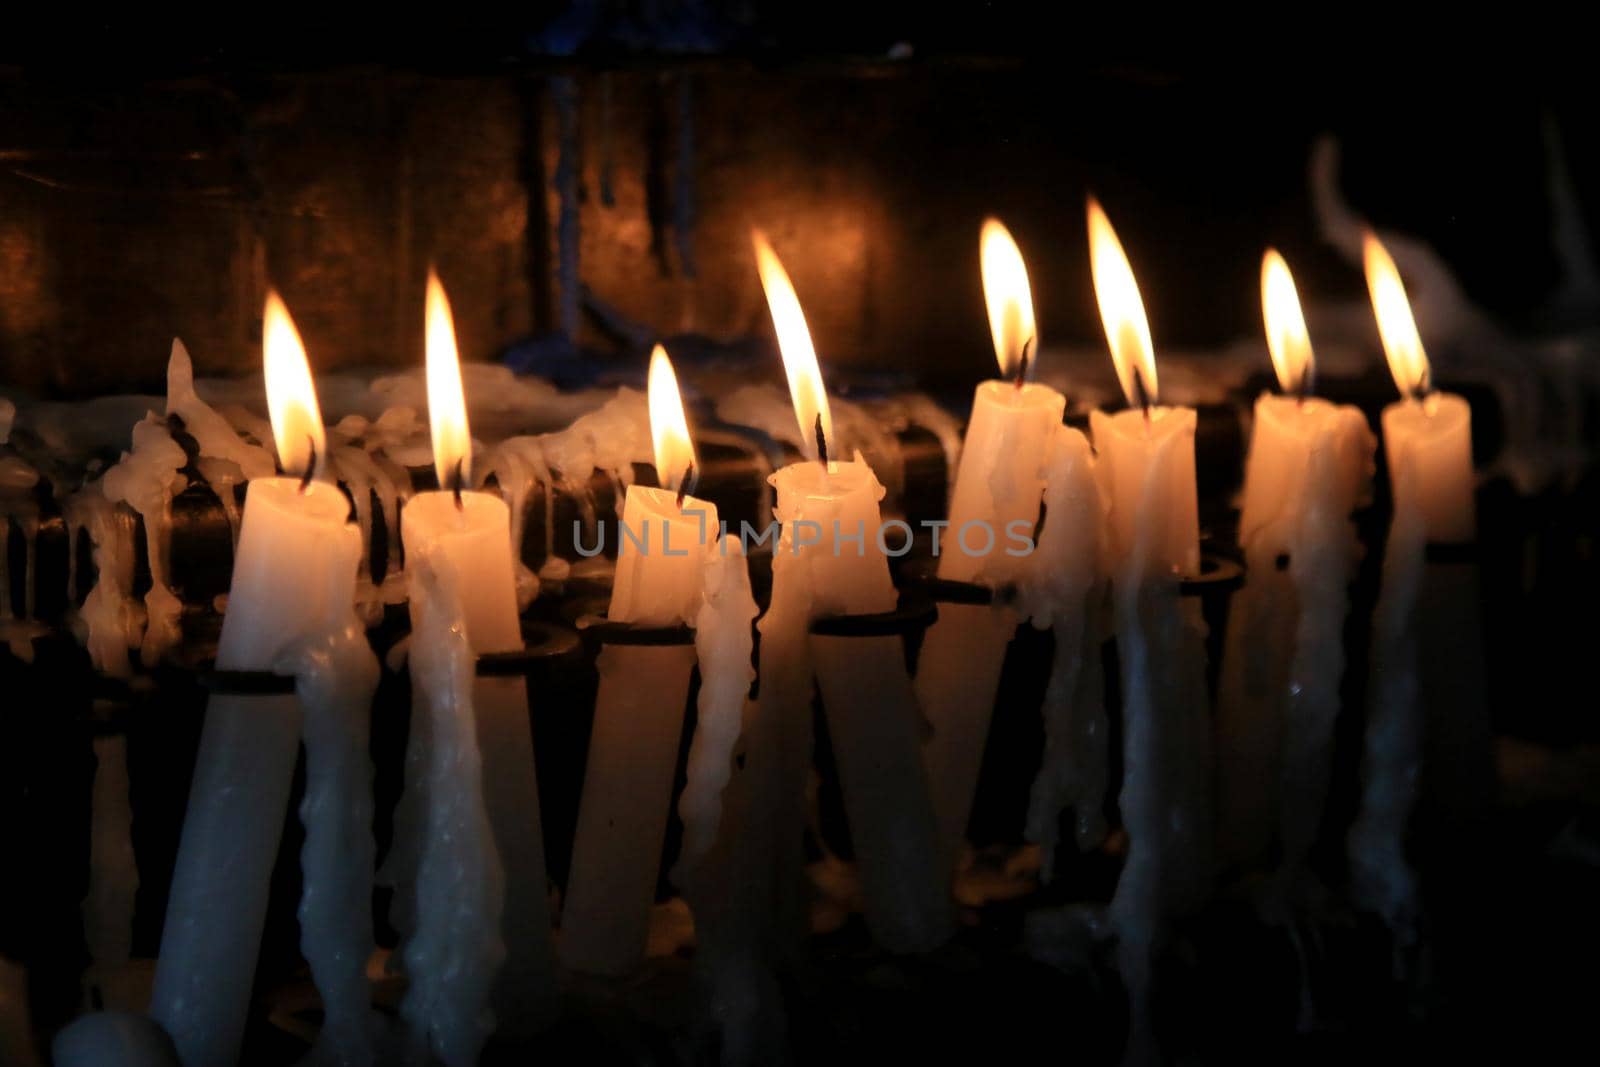 salvador, bahia, brazil - january 13, 2021: lighted candles are seen near the Nosso Senhor do Bonfim church in the city of Salvador.